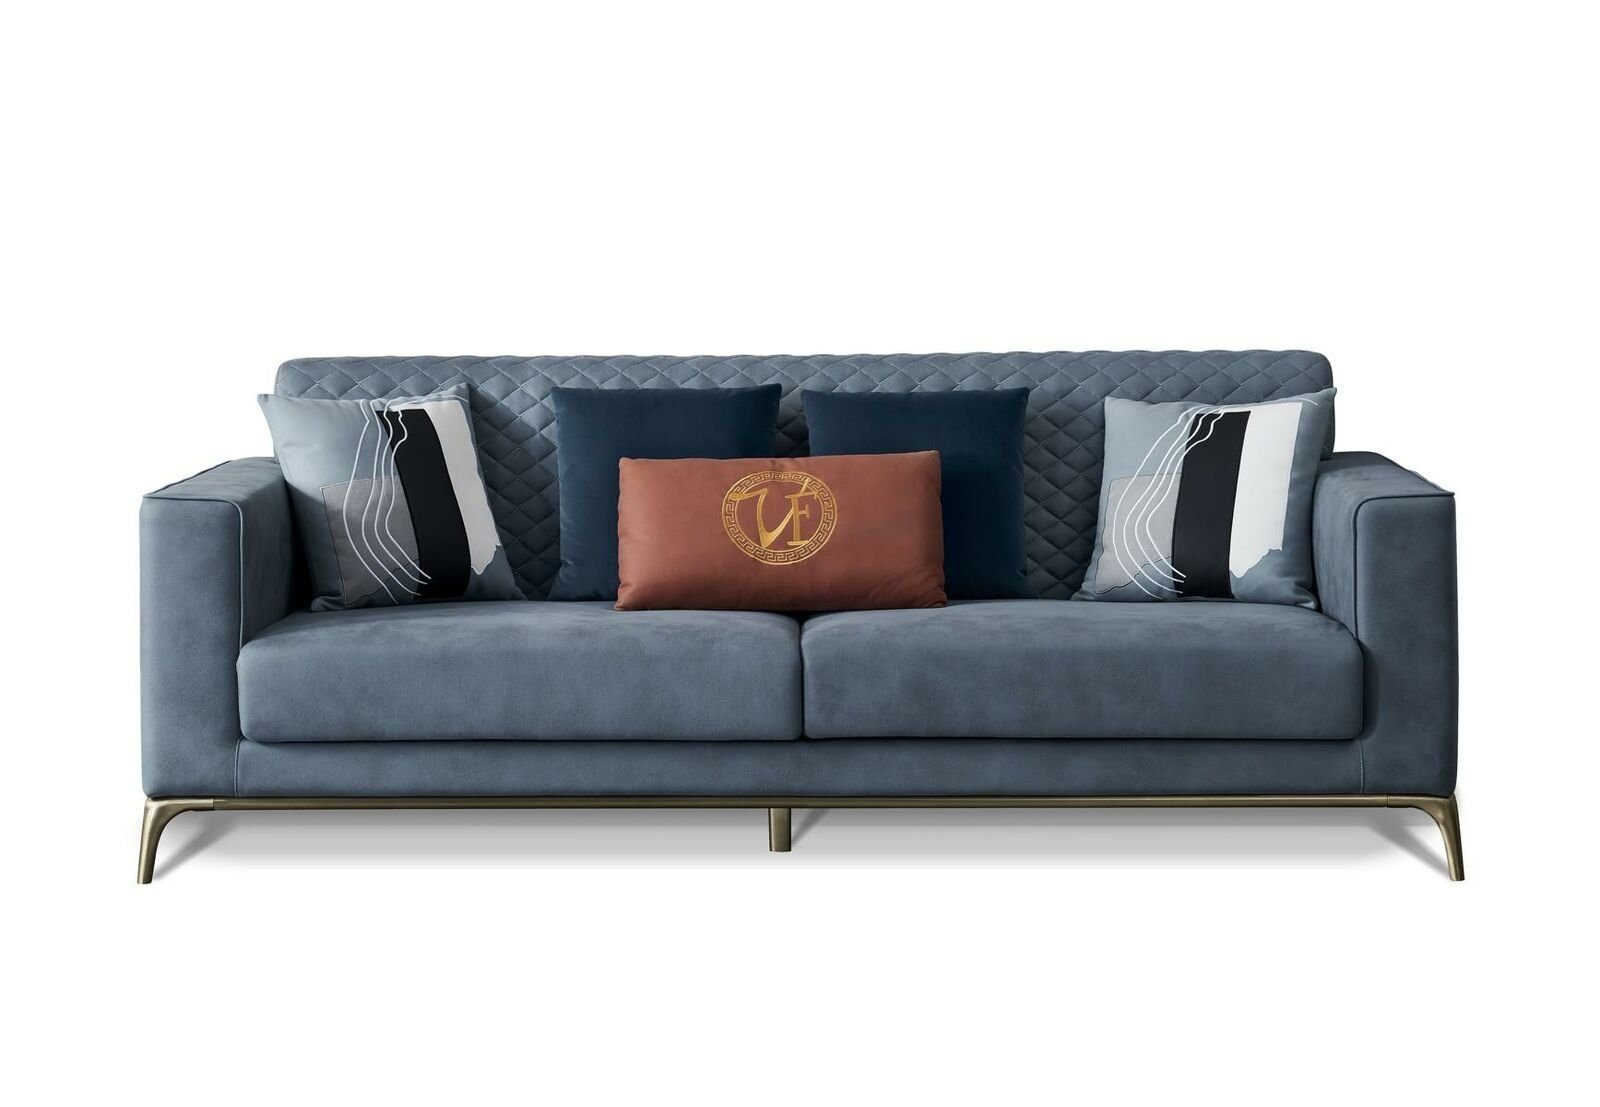 Exklusiver Sonderpreisverkauf JVmoebel Sofa Moderner Dreisitzer 3-Sitzer Möbel Design Neu, Made in Europe Polstermöbel Blauer